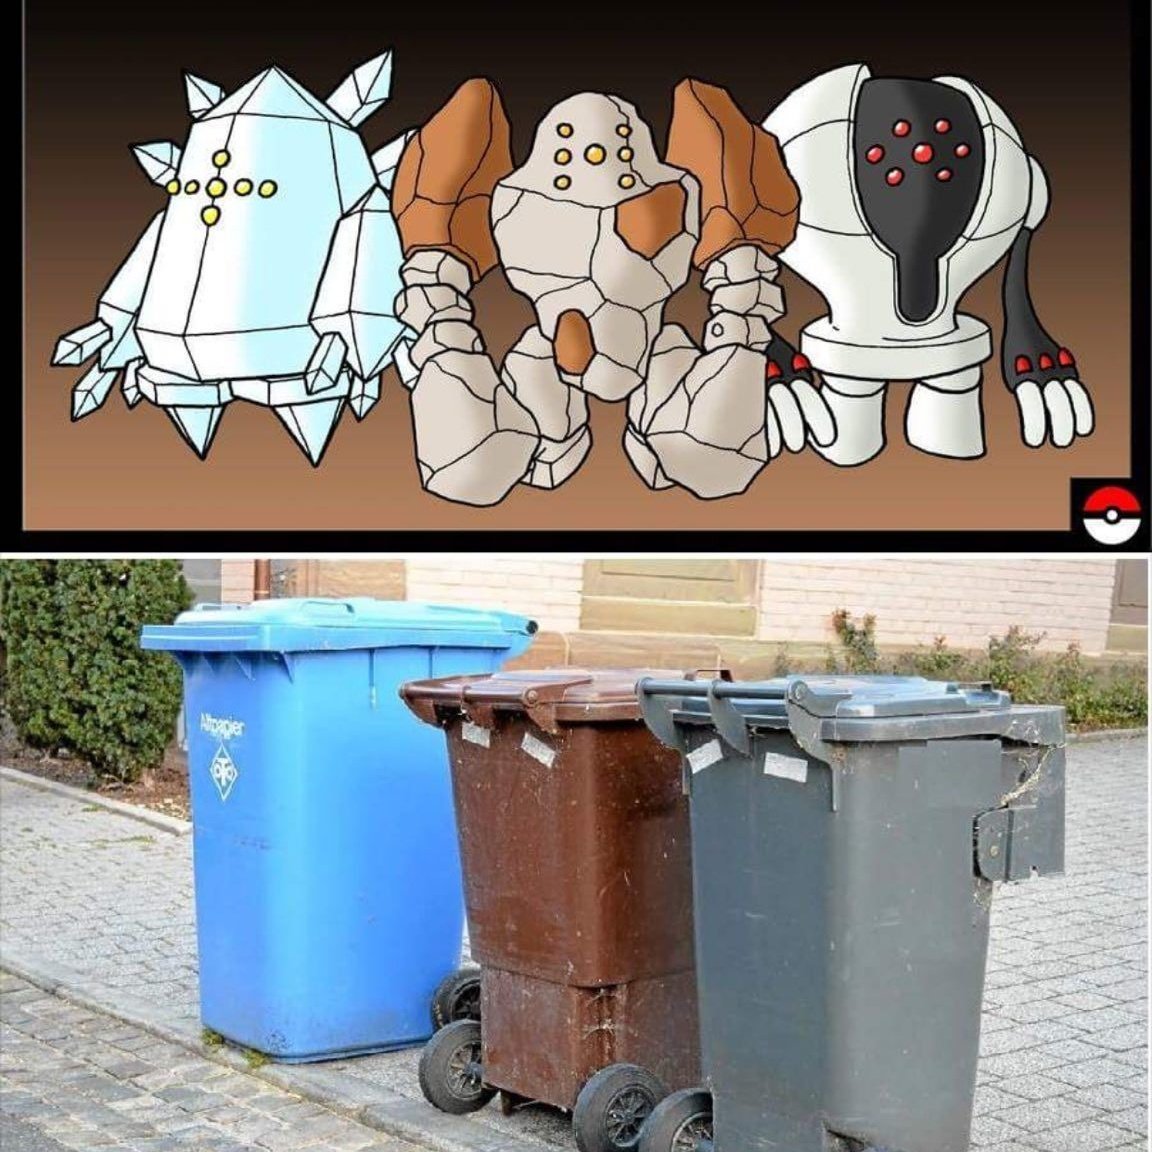 Regi trio compared to trash cans